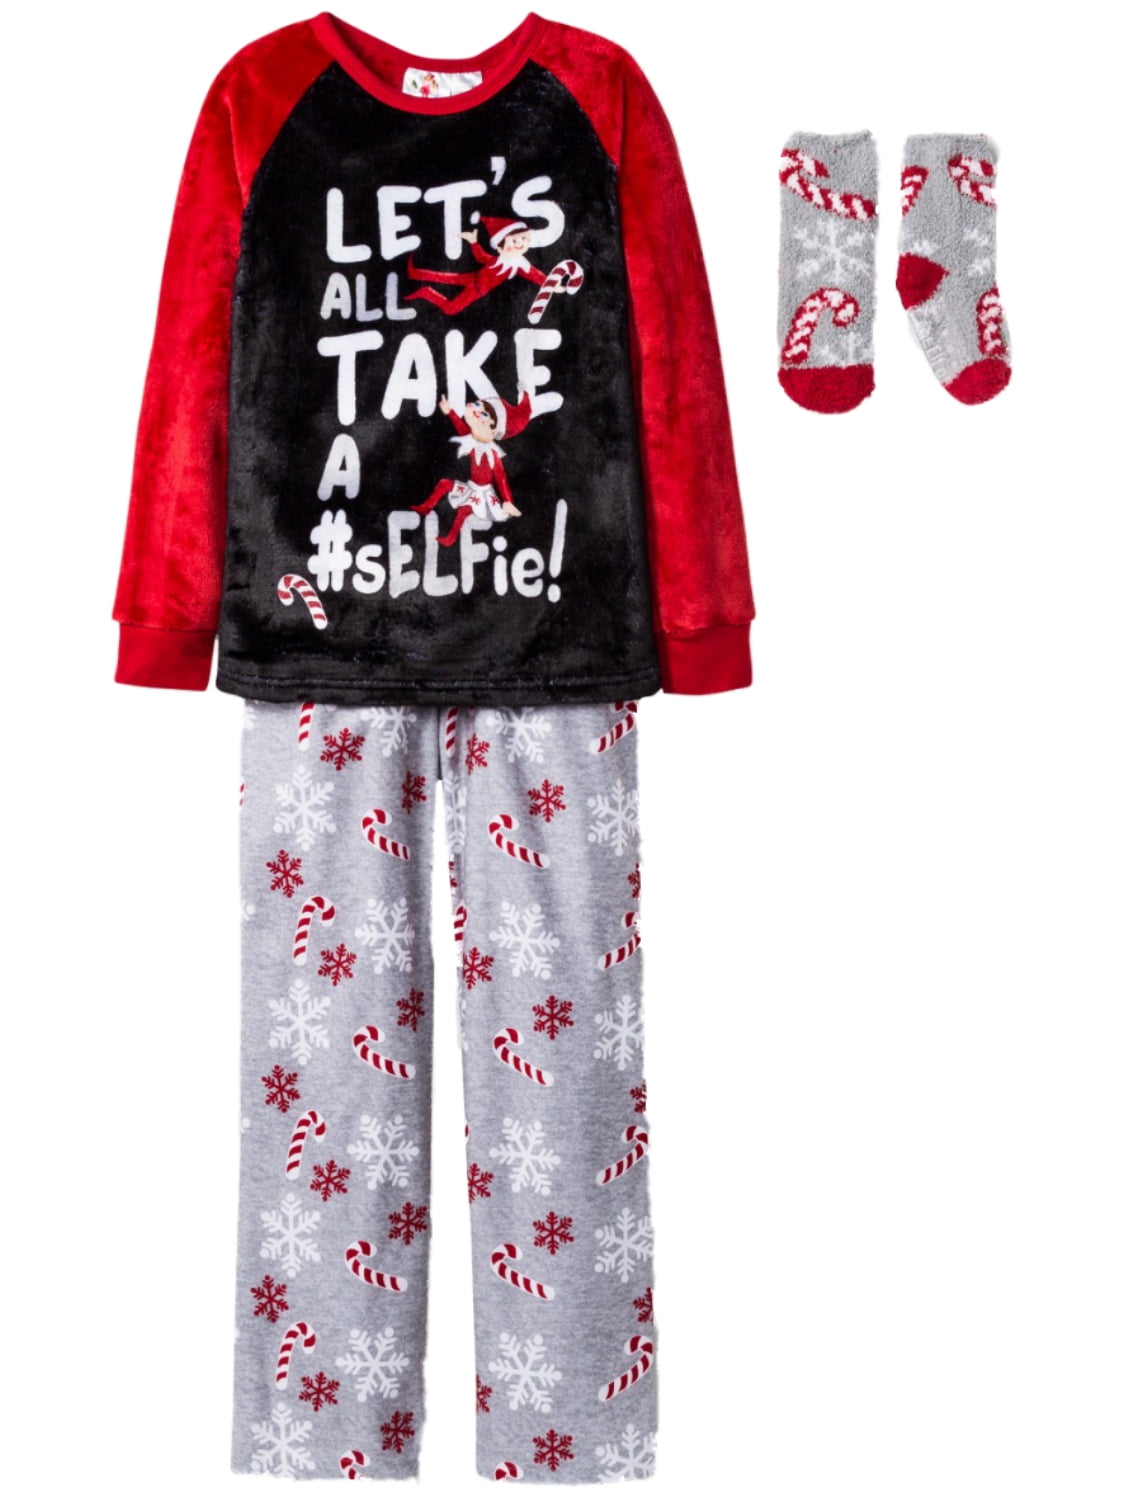 The Elf On The Shelf Polka-Dot Christmas Pajama Pj Set Girl Clothes Size 3t 